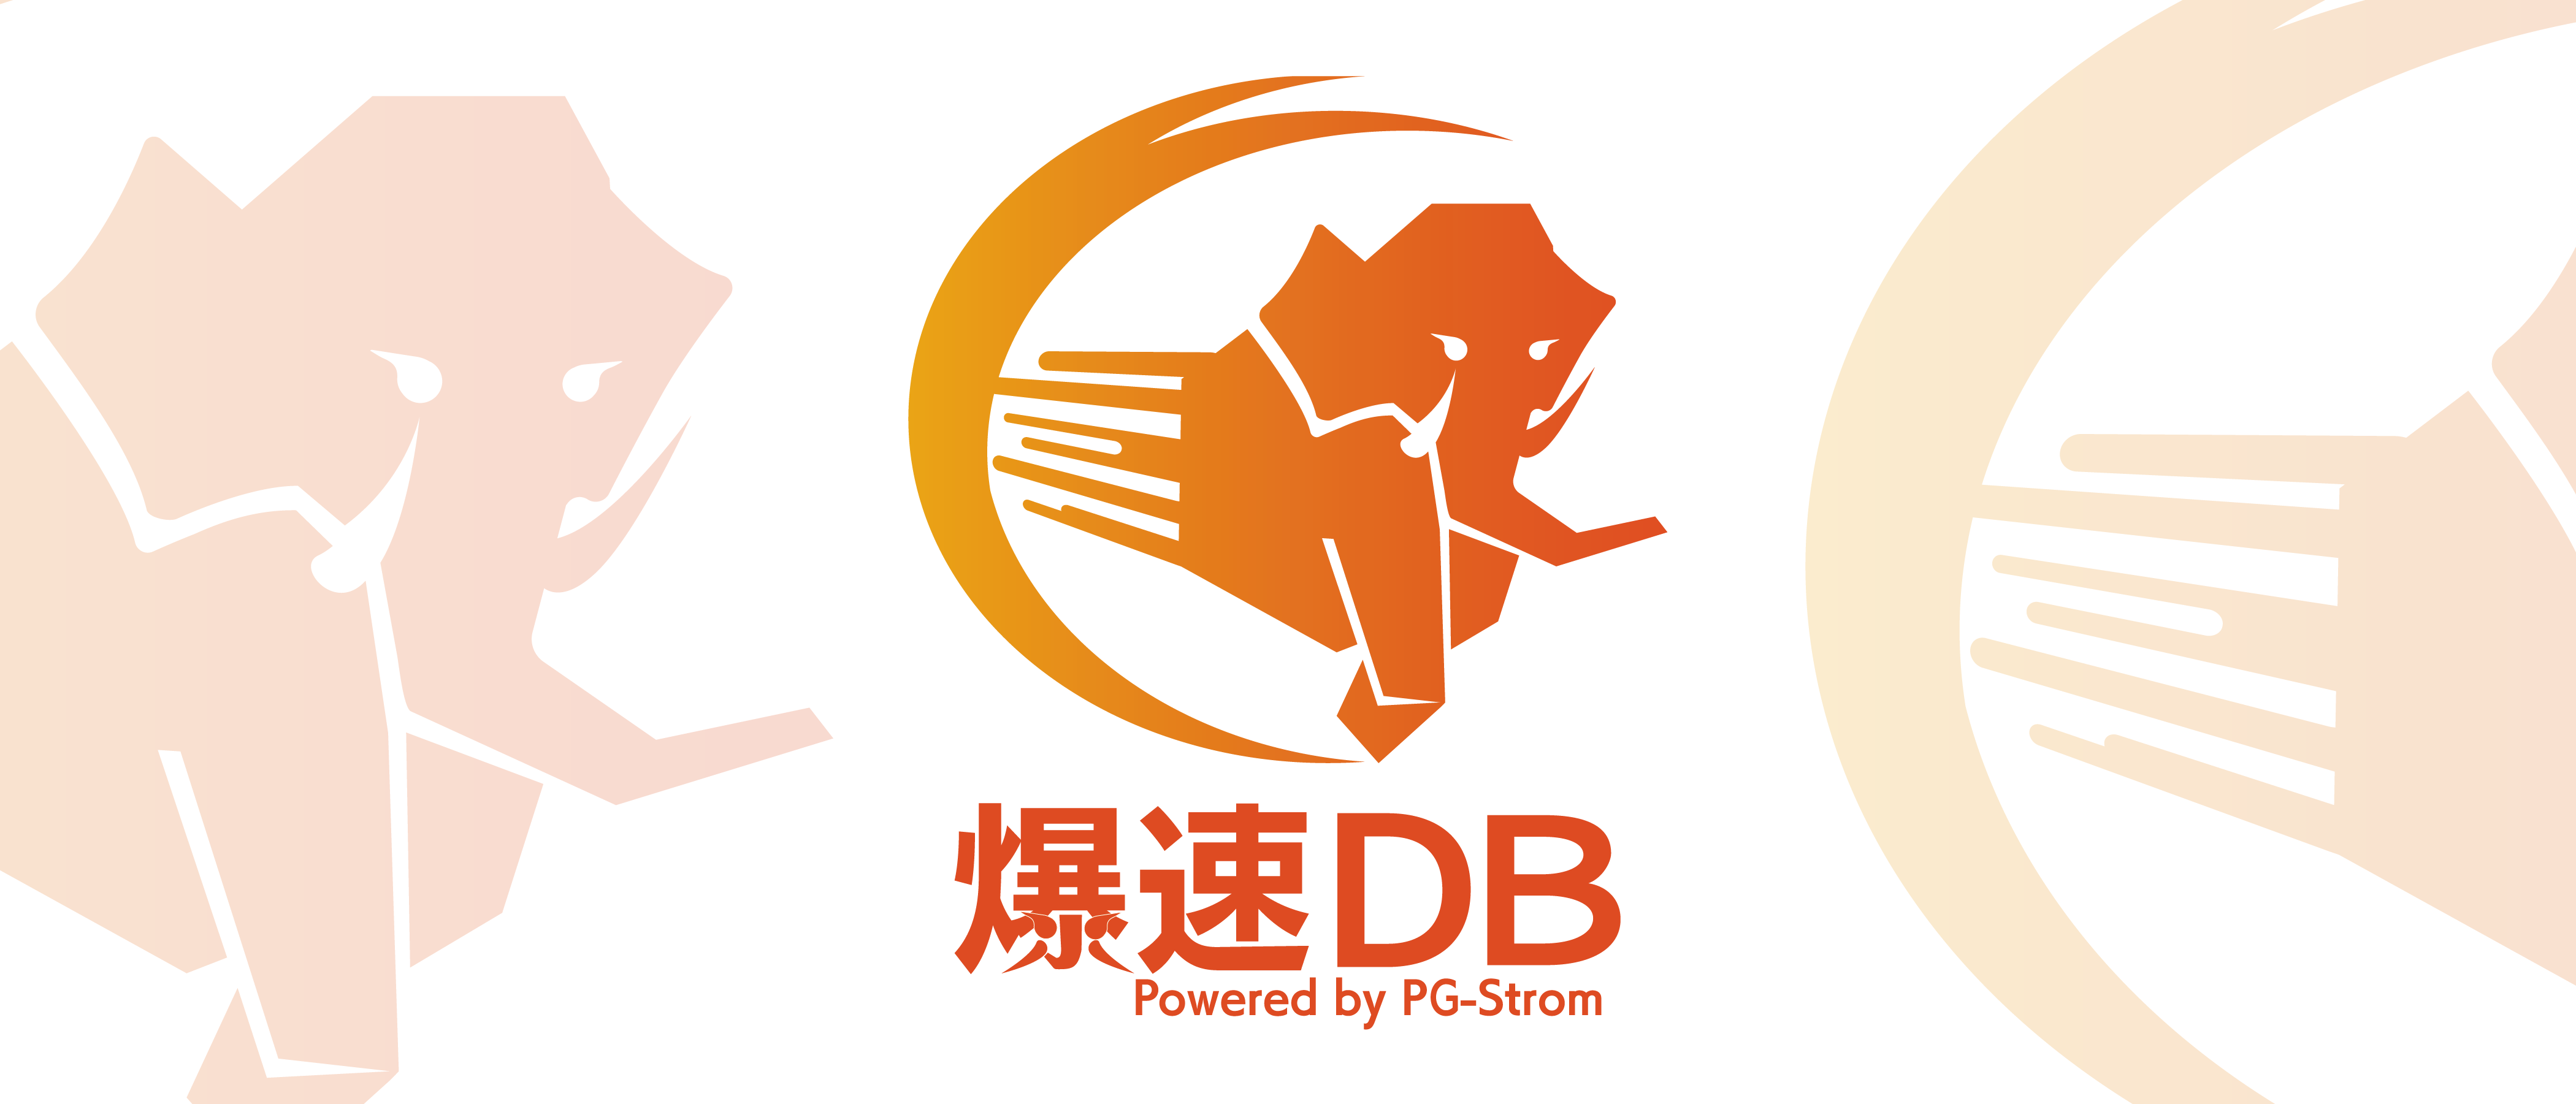 BakusokuDB Logo Design